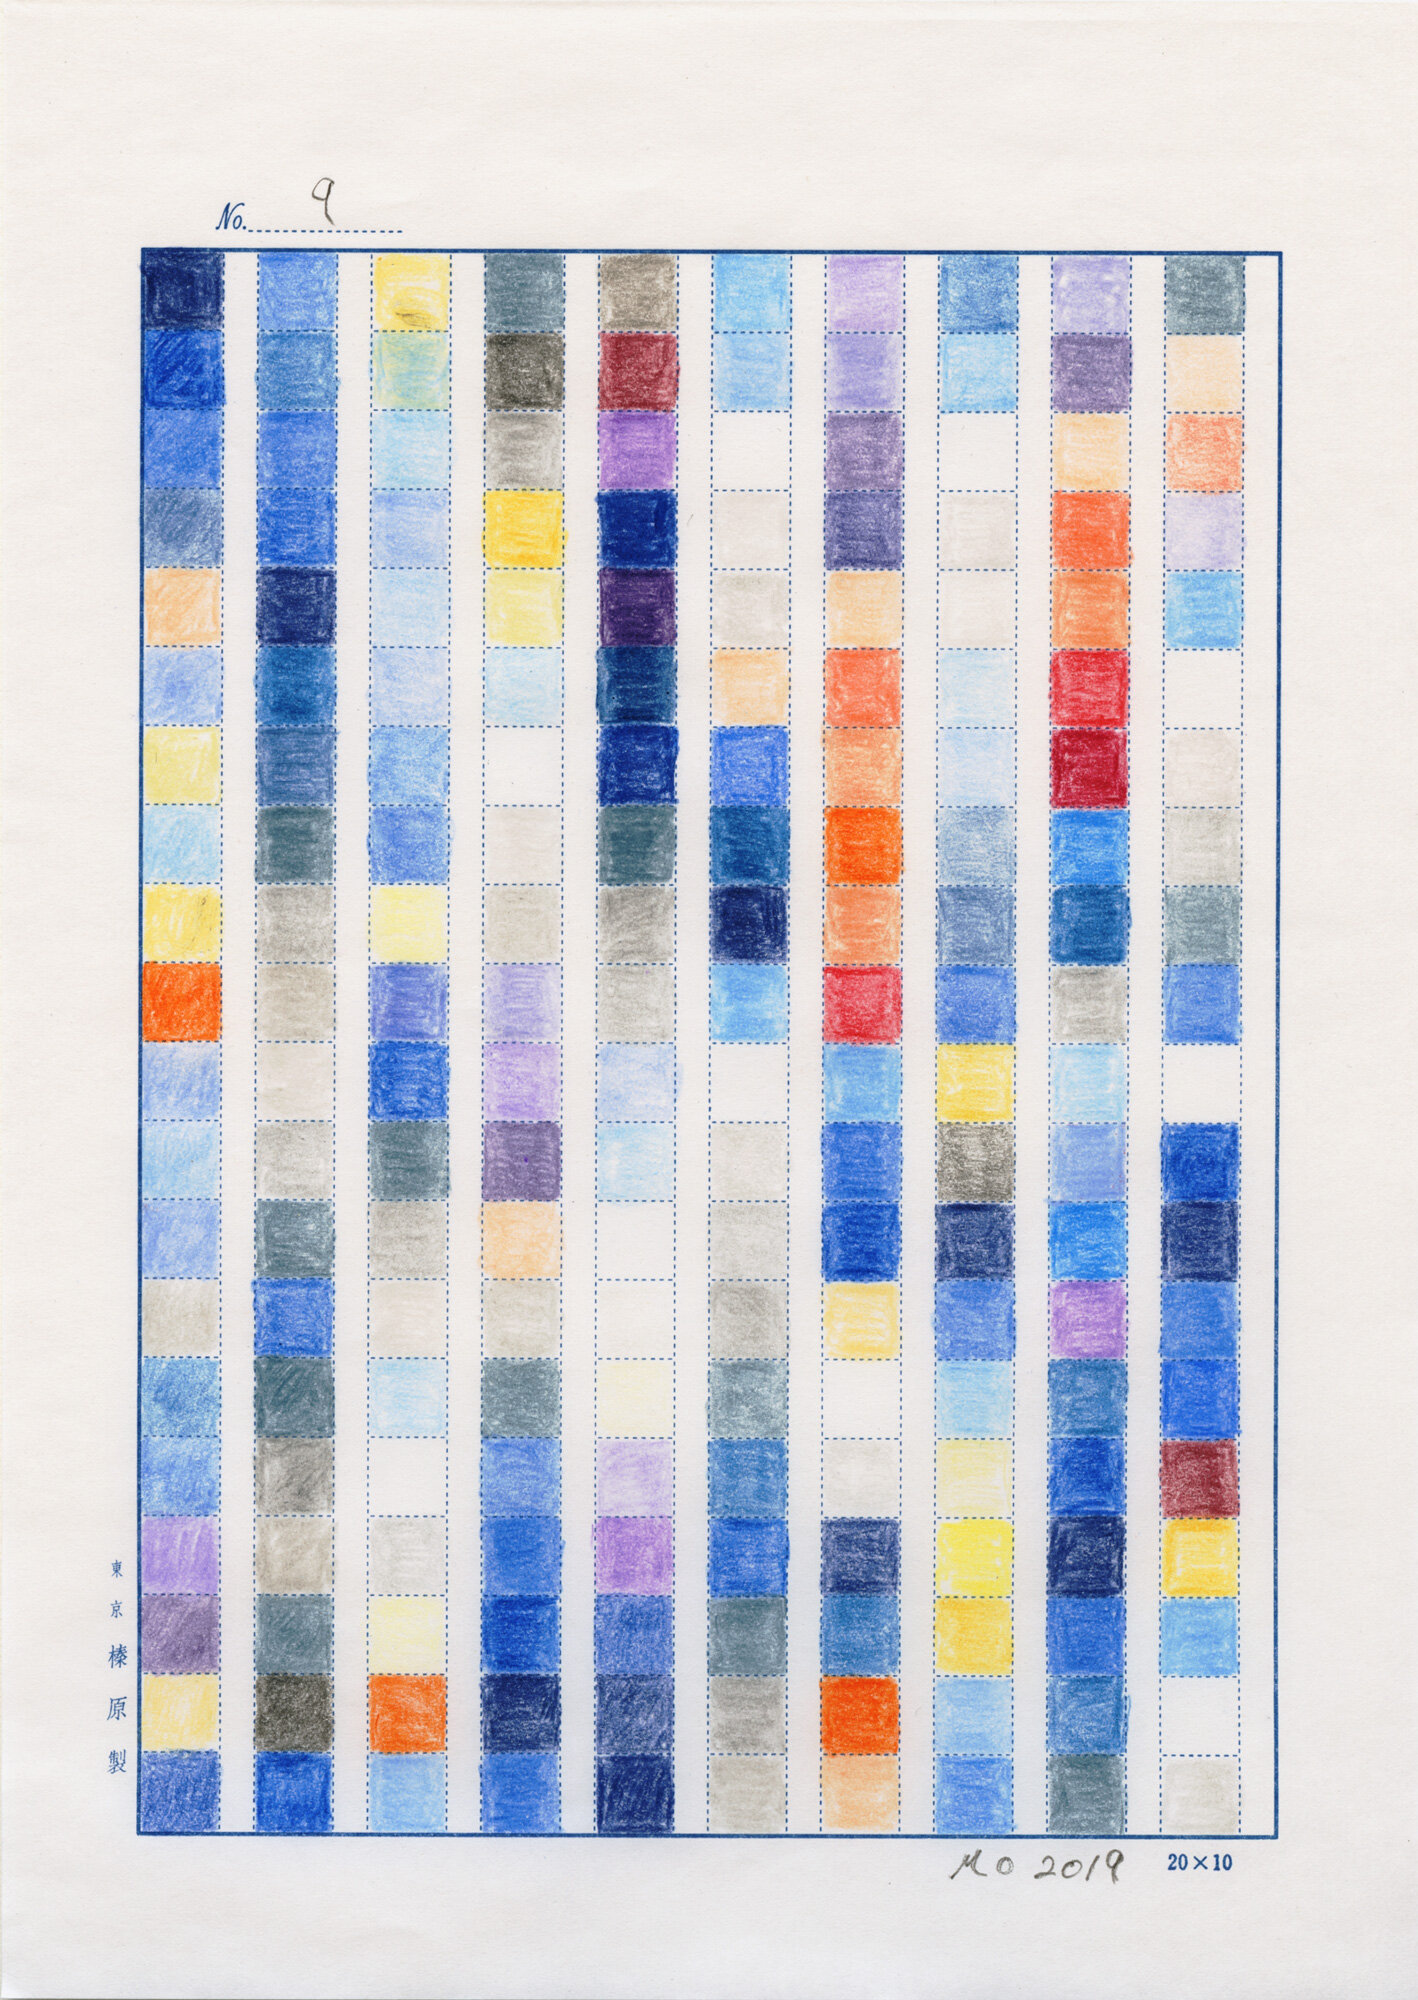    日日是好日   (No.9, 1983-2019, an ongoing project), color pencil on manuscript paper and international mail, 9-49/64” x 6-15/16” (24.8 cm x 17.6 cm), sent to Taito-ku, Tokyo Japan from LIC NY, USA 